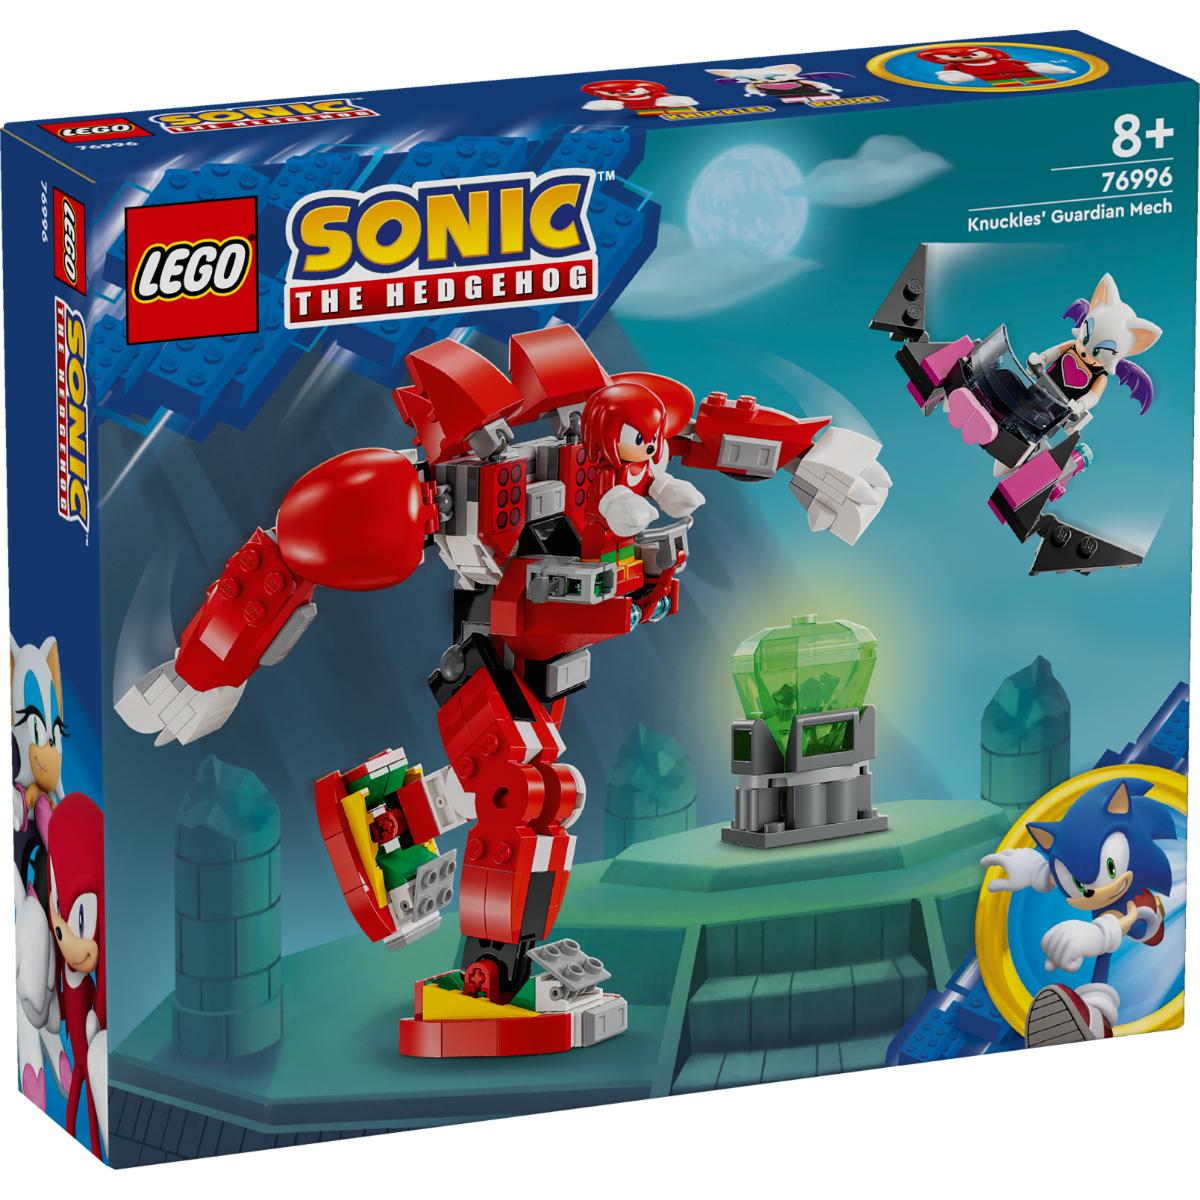 Poze LEGO® Sonic the Hedgehog™ - Robotul gardian al lui Knuckles (76996) noriel.ro 